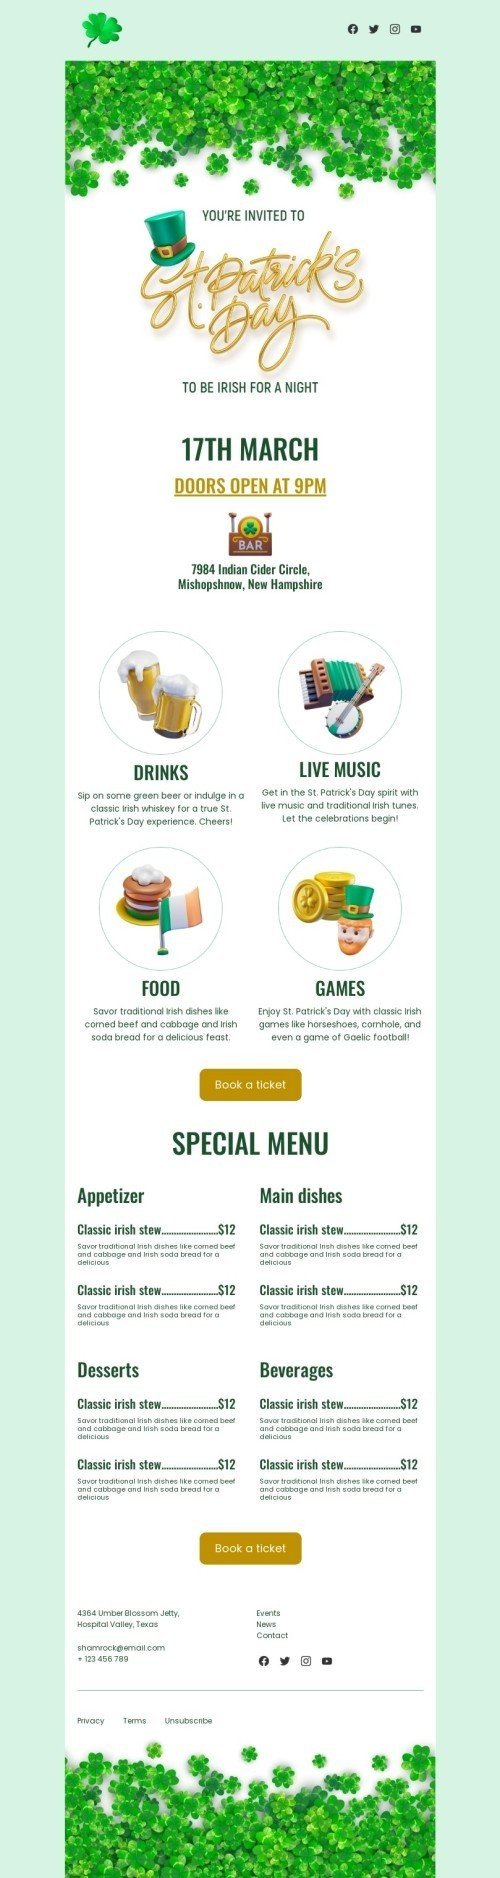 St. Patrick‘s Day E-Mail-Vorlage «Für eine Nacht irisch sein» für Restaurants-Branche Ansicht auf Mobilgeräten